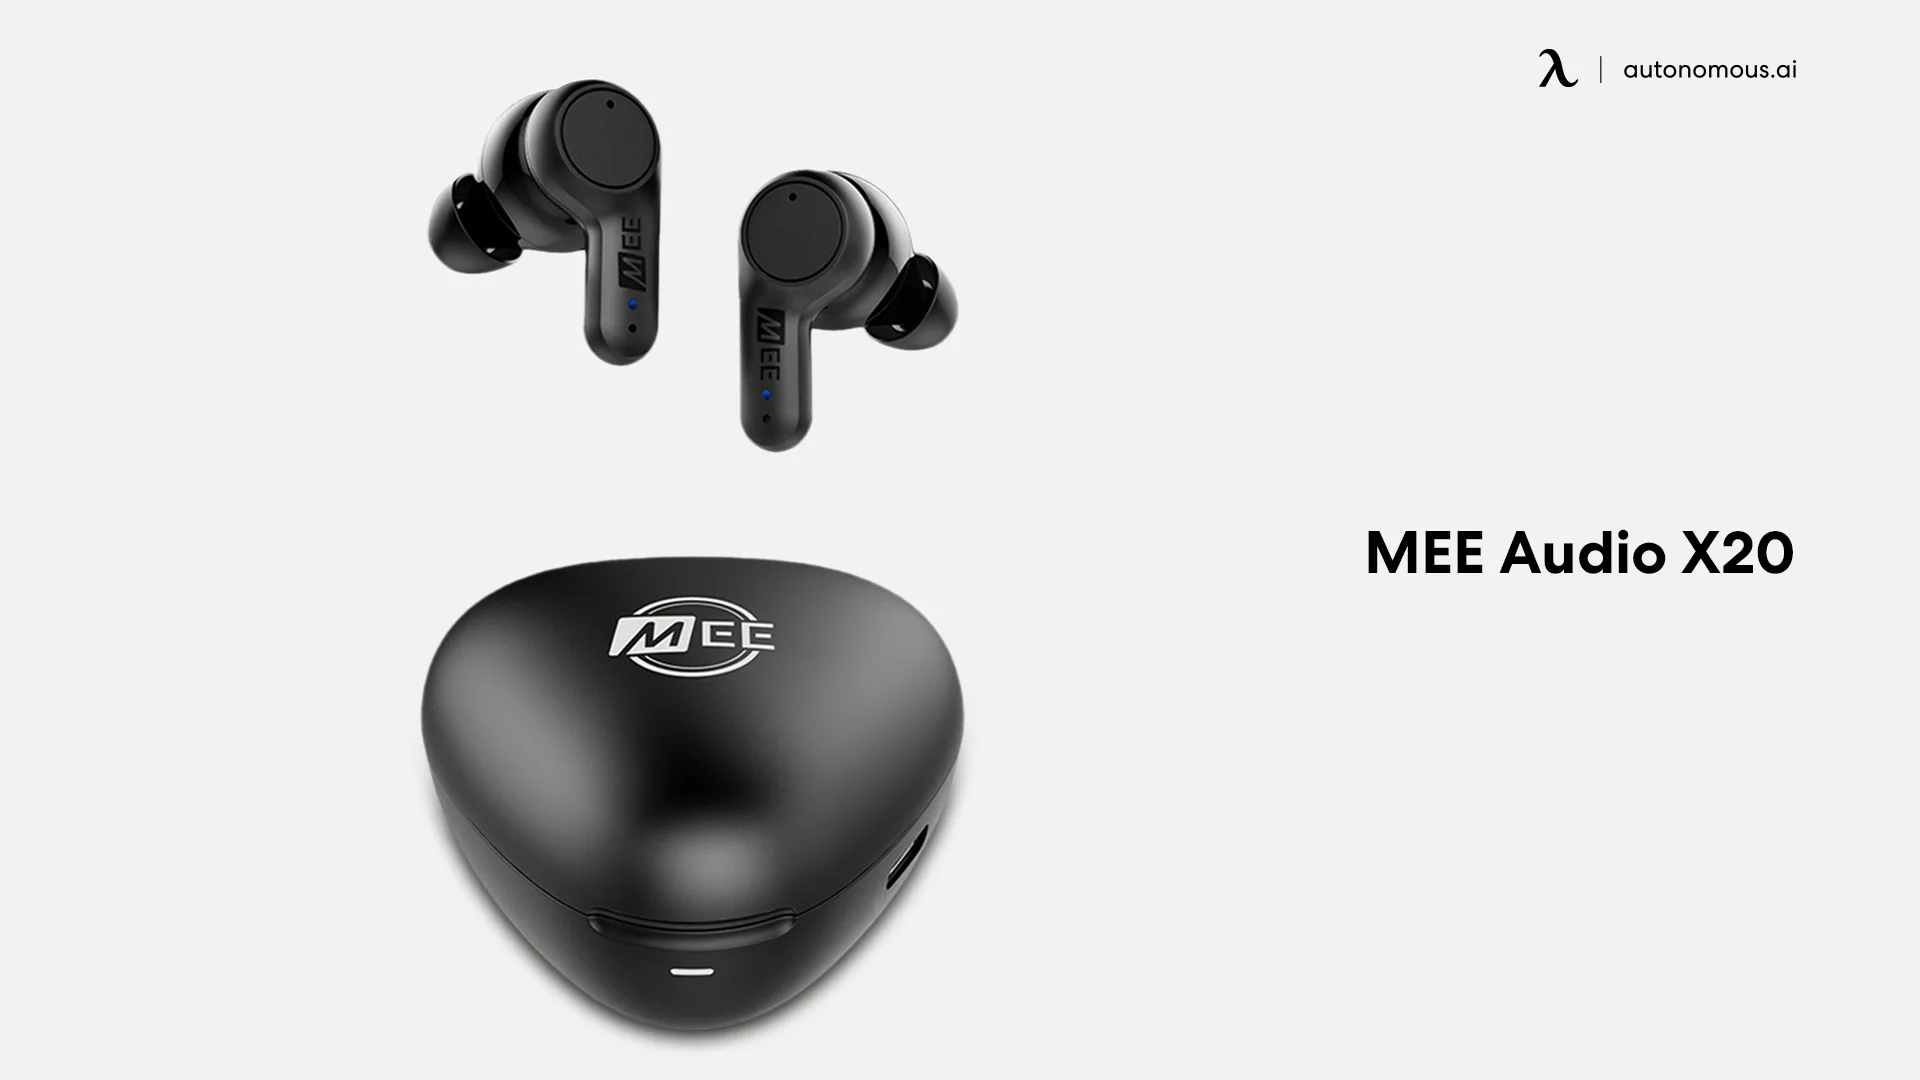 MEE Audio X20 wireless noise-canceling headphones